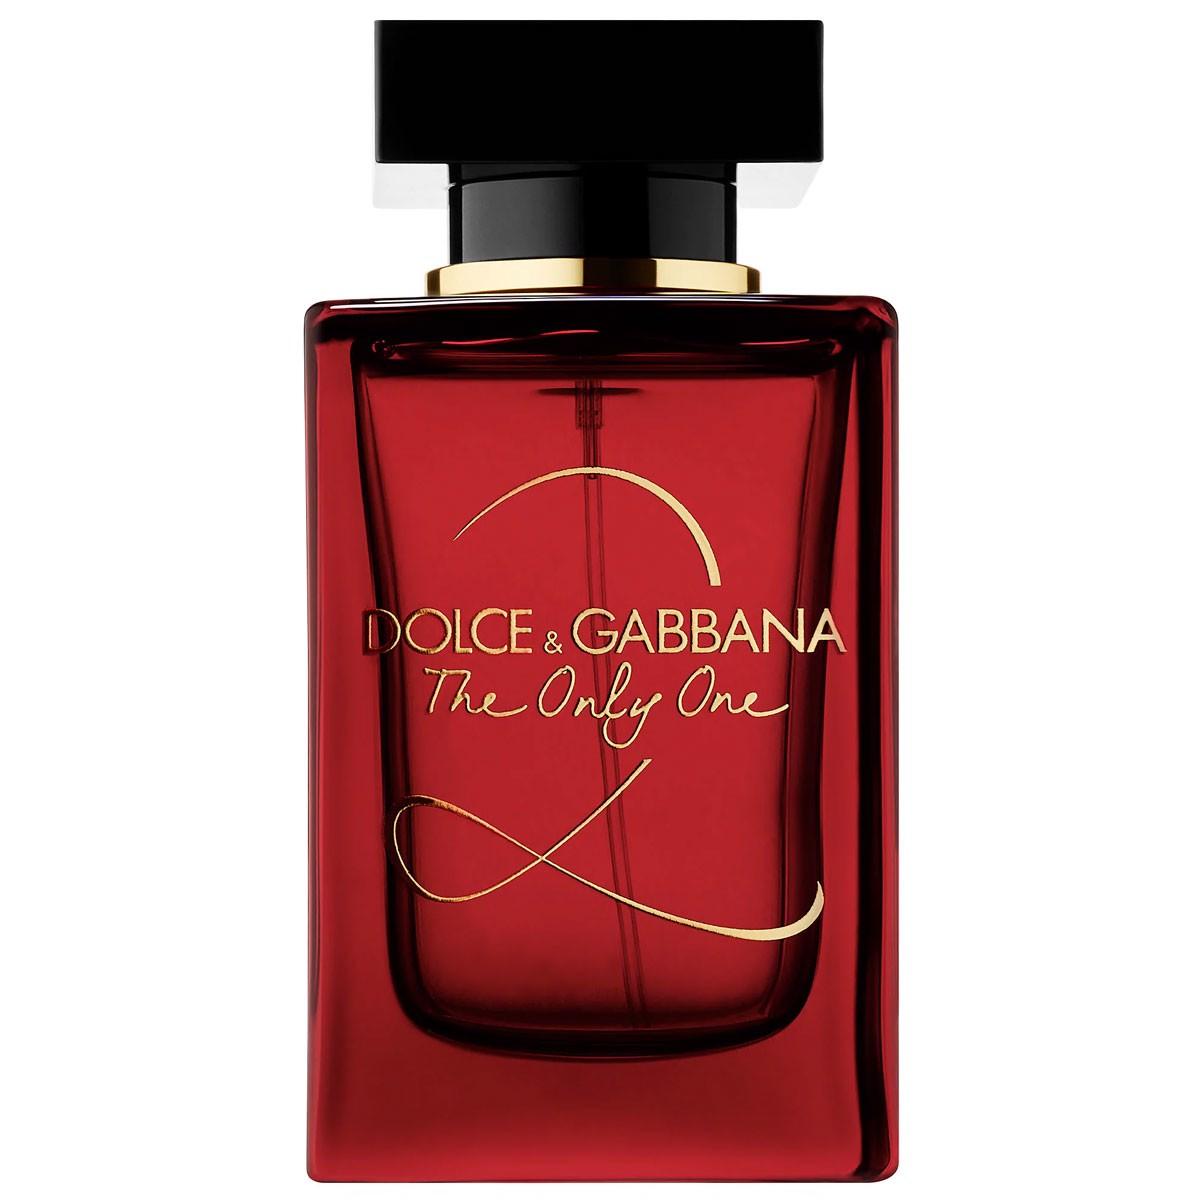 Mua Nước Hoa Dolce & Gabbana The Only One 2 EDP 100ml cho Nữ, chính hãng,  Giá tốt